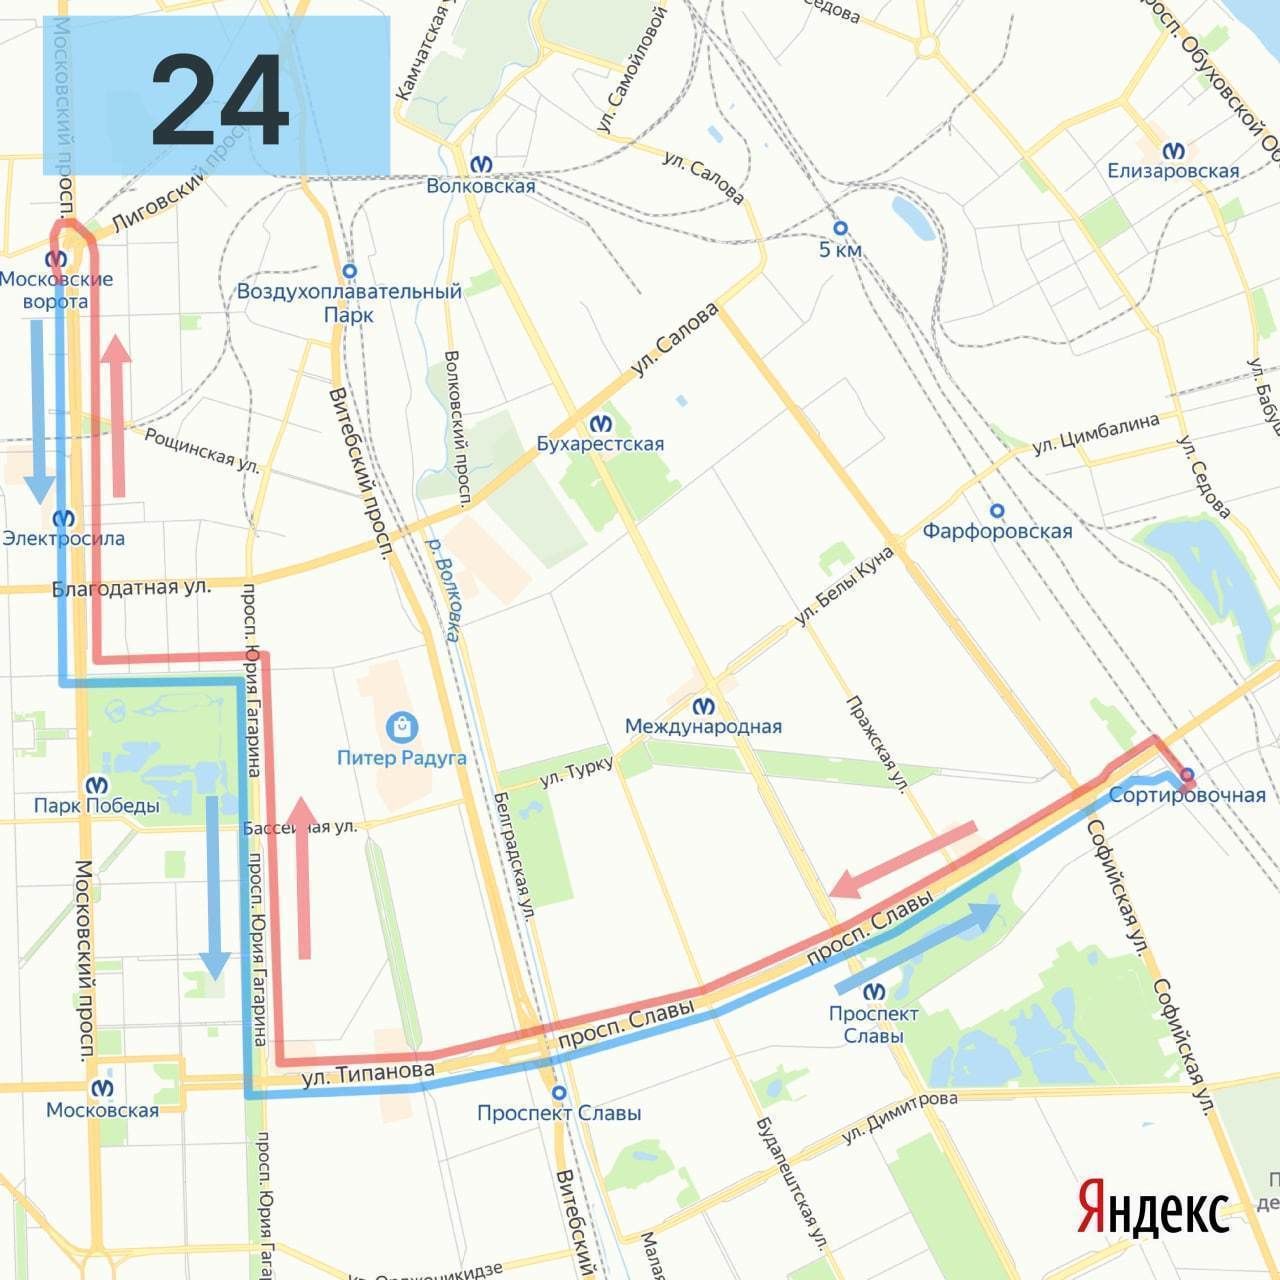 Изменения 24 маршрута